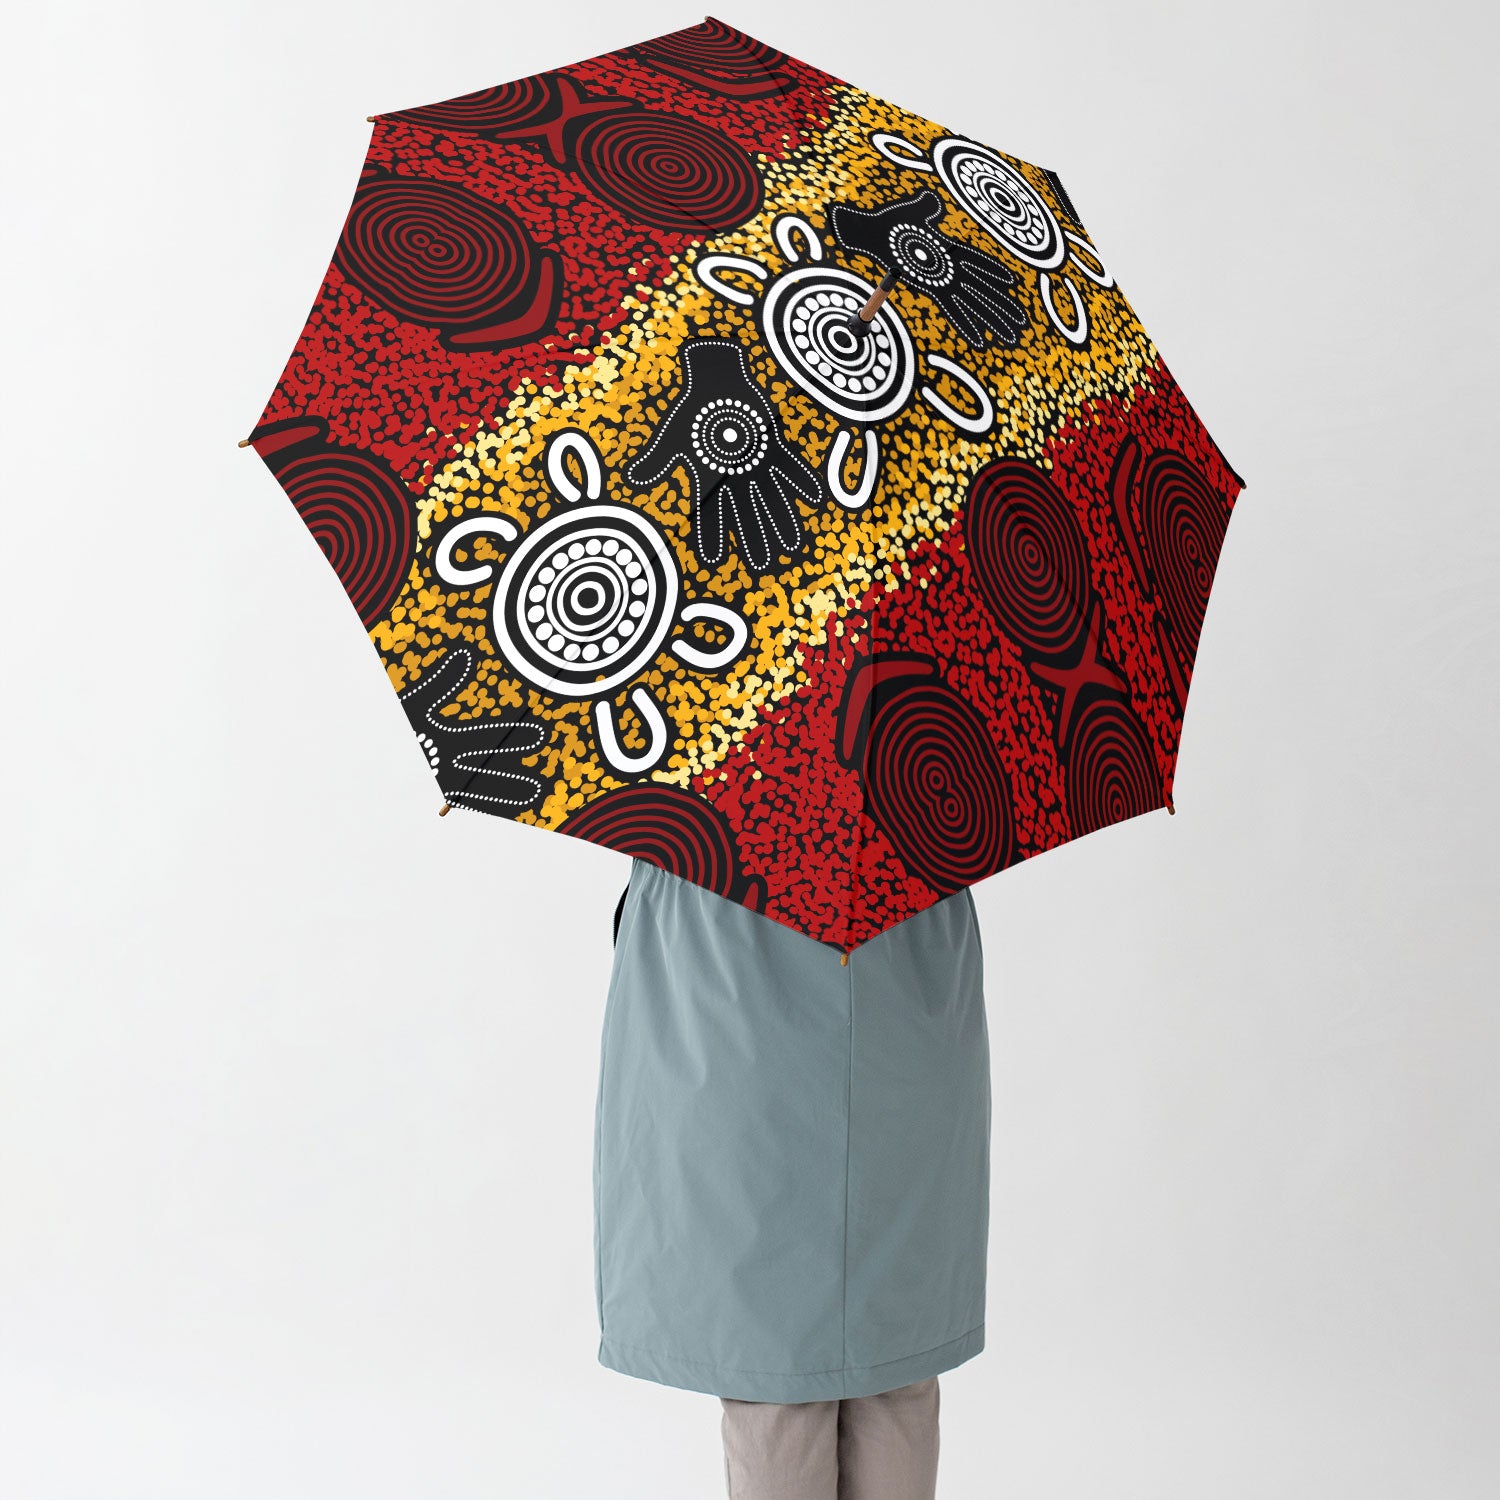 Australia Aboriginal Umbrella Aboriginal hand print artwork Umbrella